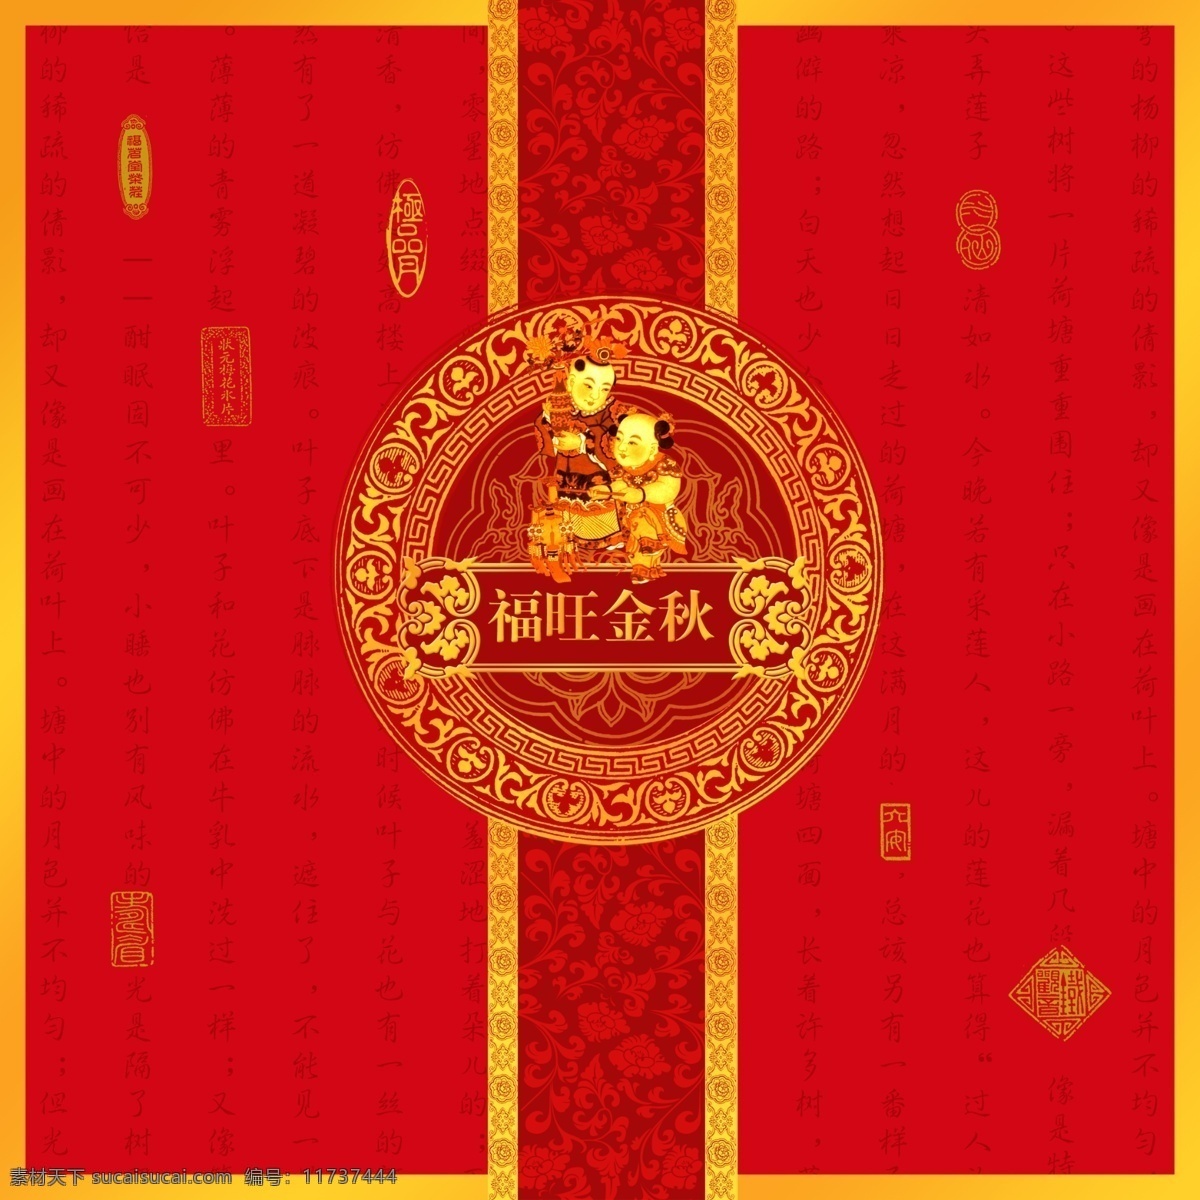 中秋月饼 包装设计 包装 传统 中国风 民族 中秋 月饼 红色